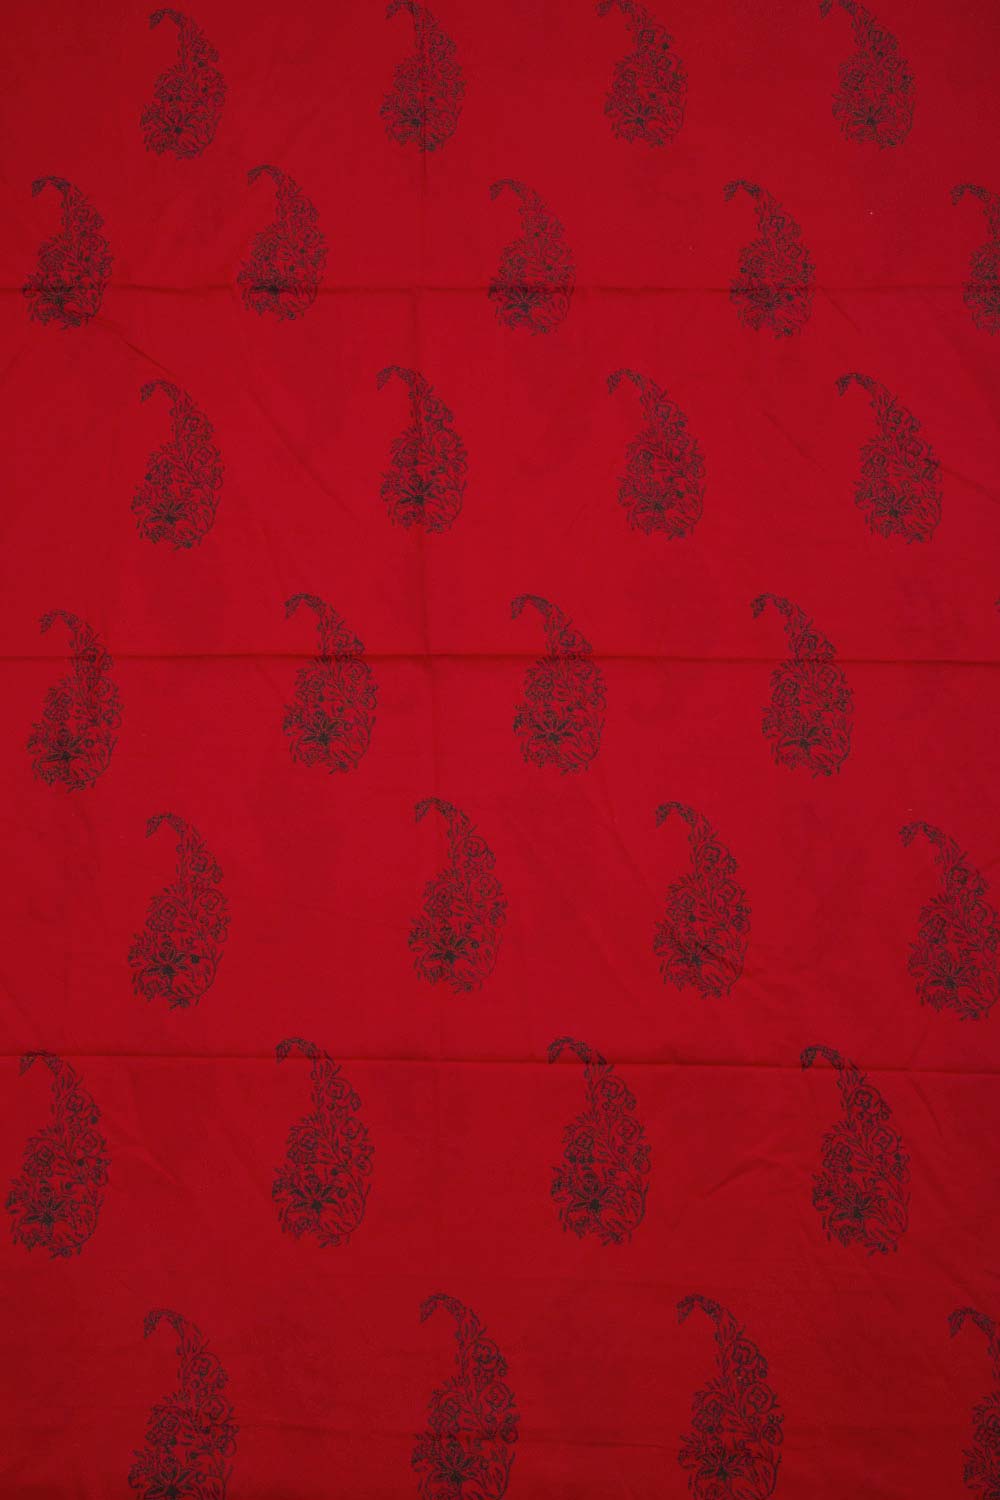 Red Hand Block Printed Mulmul Cotton Salwar Suit Material 10062853